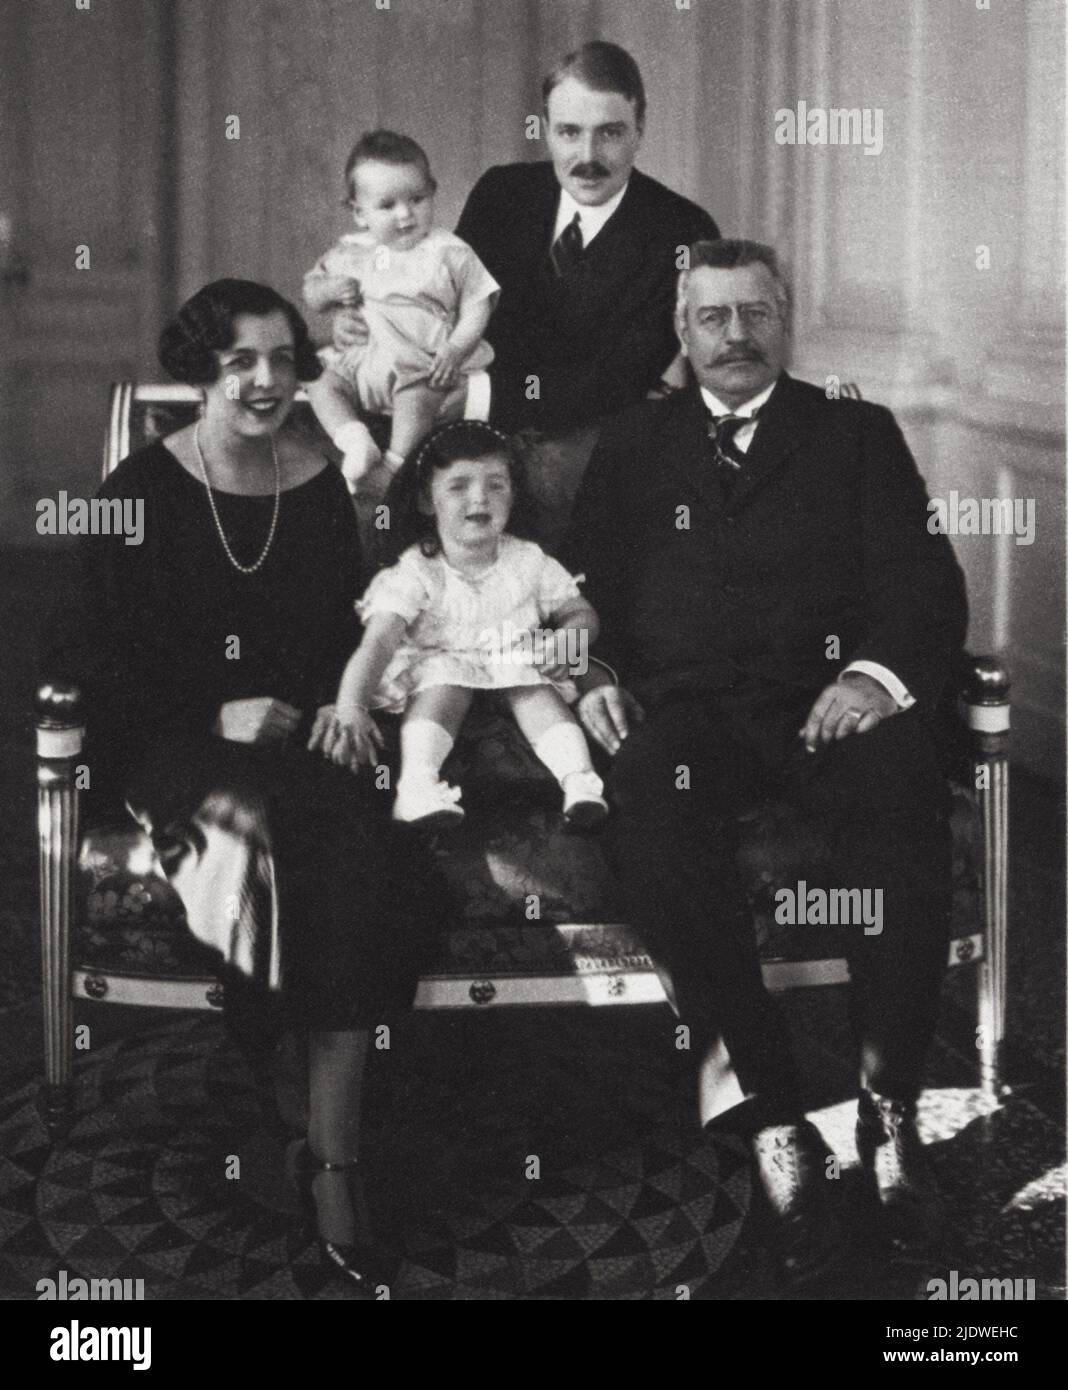 1924 , Monaco : der Prinz RANIERI III von Monaco GRIMALDI Duc von Valentinois ( RAINIER , geboren 1923 ) mit Vater Graf PIERRE DE POLIGNAC und Mutter Princesse CHARLOTTE RANIERI ( 1898 - 1977 ) , die Schwester ANTOINETTE ( geboren 1920 ) Und Großvater Prinz LUIS II GRIMALDI ( Luigi , 1870 - 1949 ) - REALI - nobiltà - nobili - ADEL - KÖNIGSFAMILIE - personalità celebrità da BAMBINI - PERSÖNLICHKEIT BERÜHMTHEITEN Prominente, als Kind - BABY - GESCHICHTE - FOTO STORICHE - bambino - Familie - Famiglia -- -- Archivio GBB Stockfoto